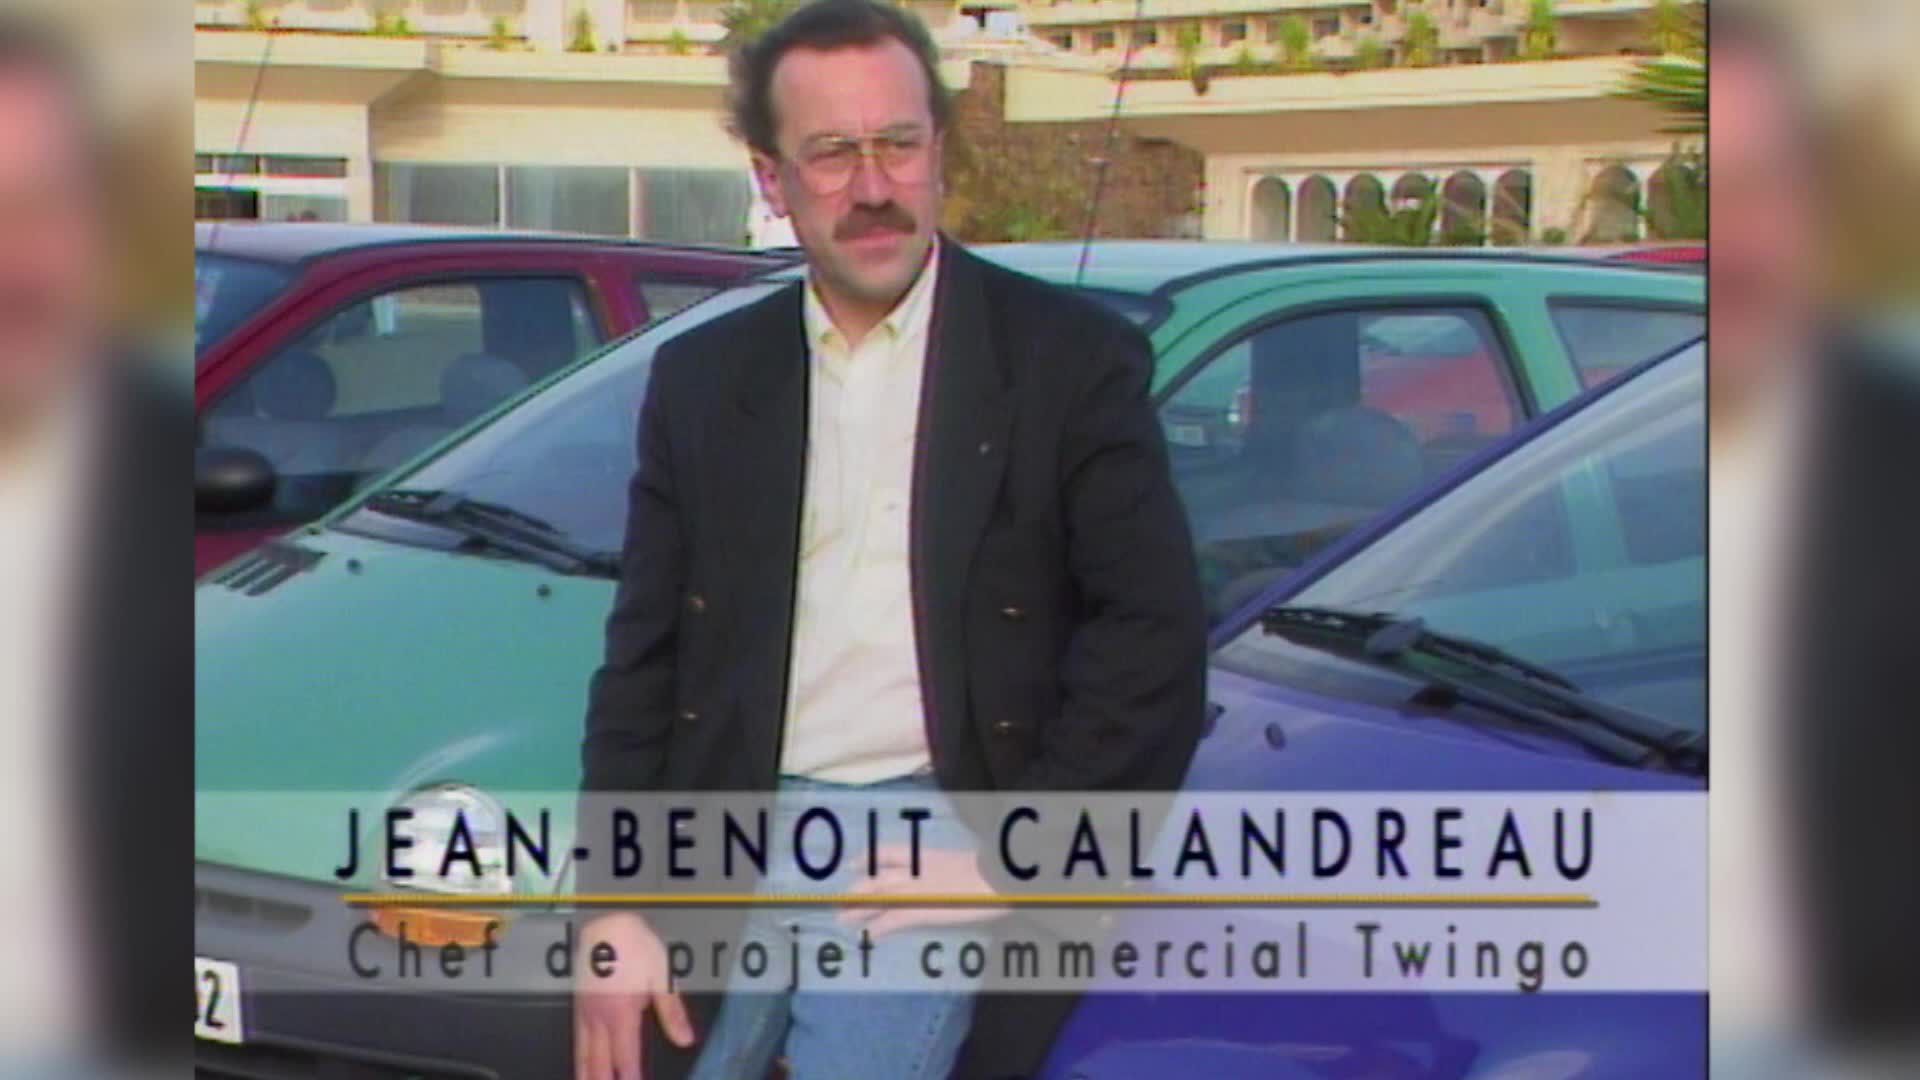 Renault Twingo 1 : à 30 ans, va-t-elle devenir hors de prix en occasion ?